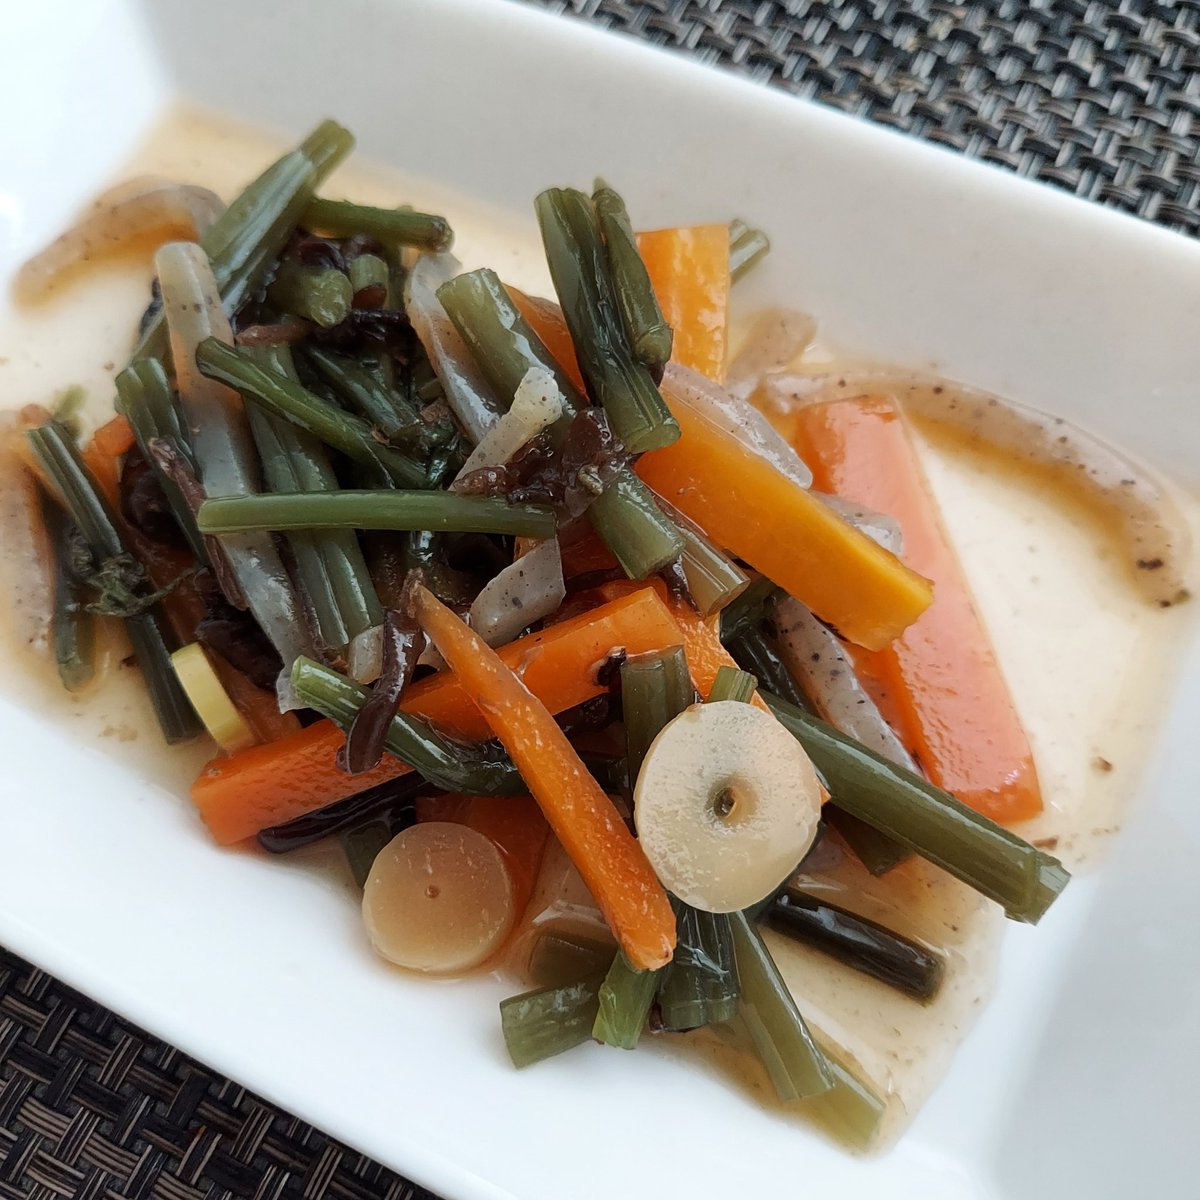 今日はオートミールお好み焼き😊キムチ納豆🔥と山菜の煮物😋
#おうちご飯
#料理好きと繋がりたい 
#オートミールはコスパ良いよね